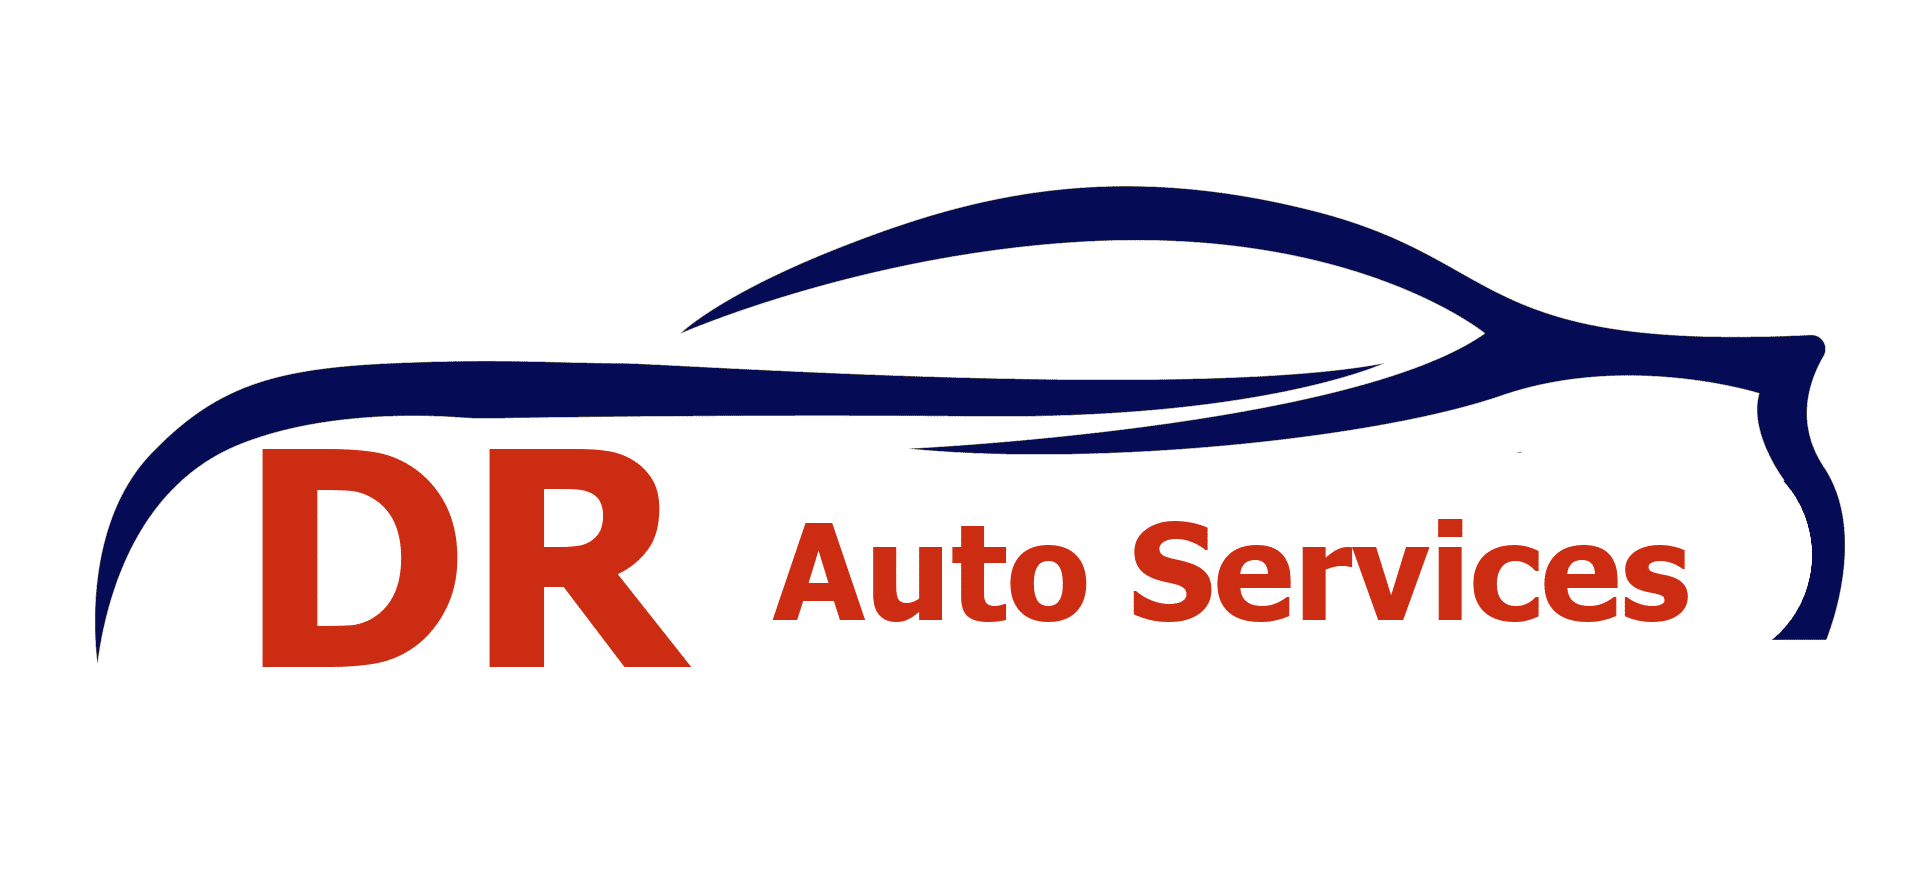 DR Auto Services